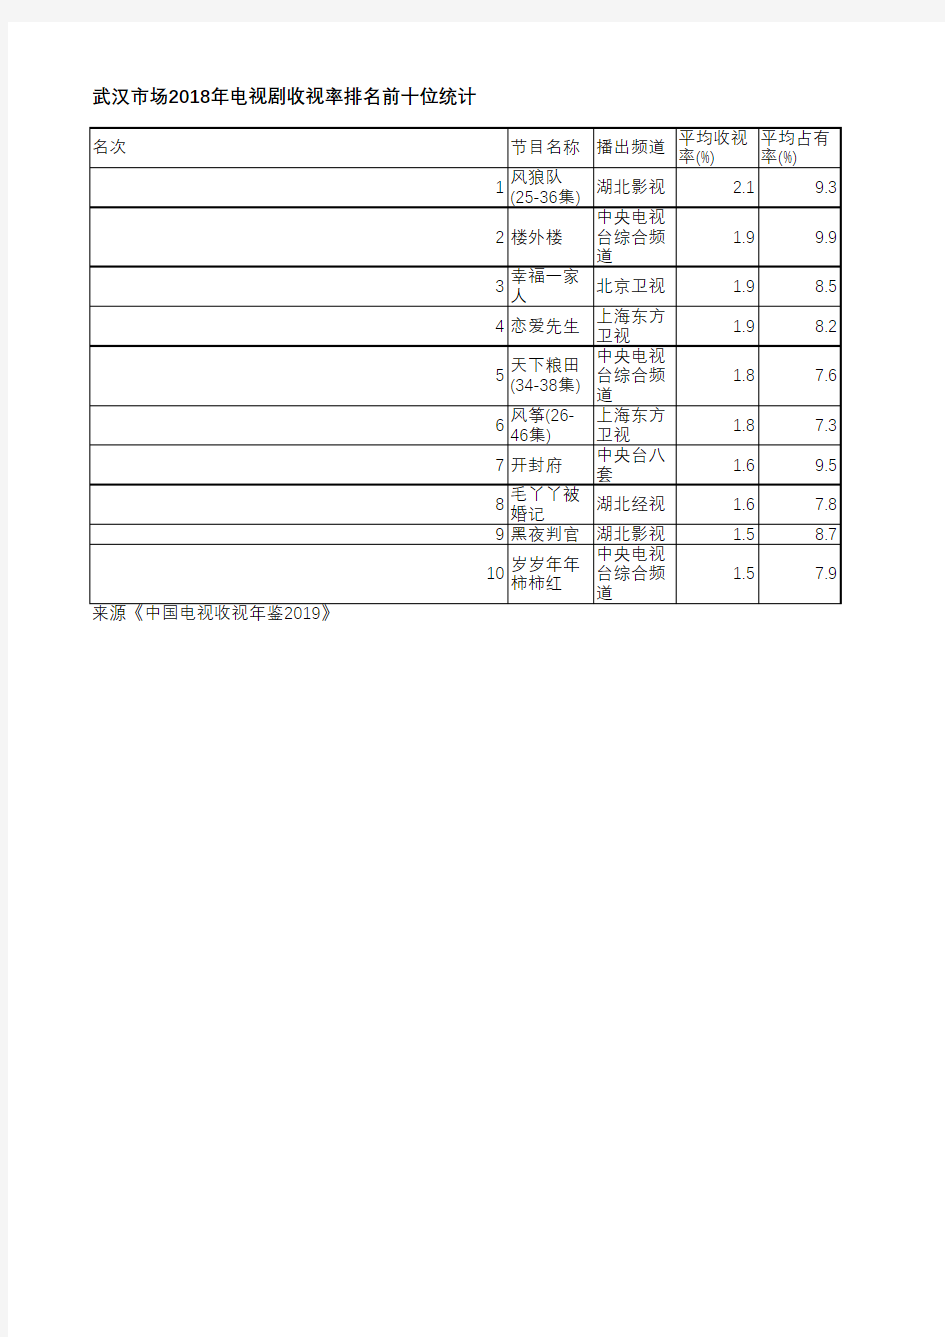 中国电视收视年鉴2019-武汉市场2018年电视剧收视率排名前十位统计